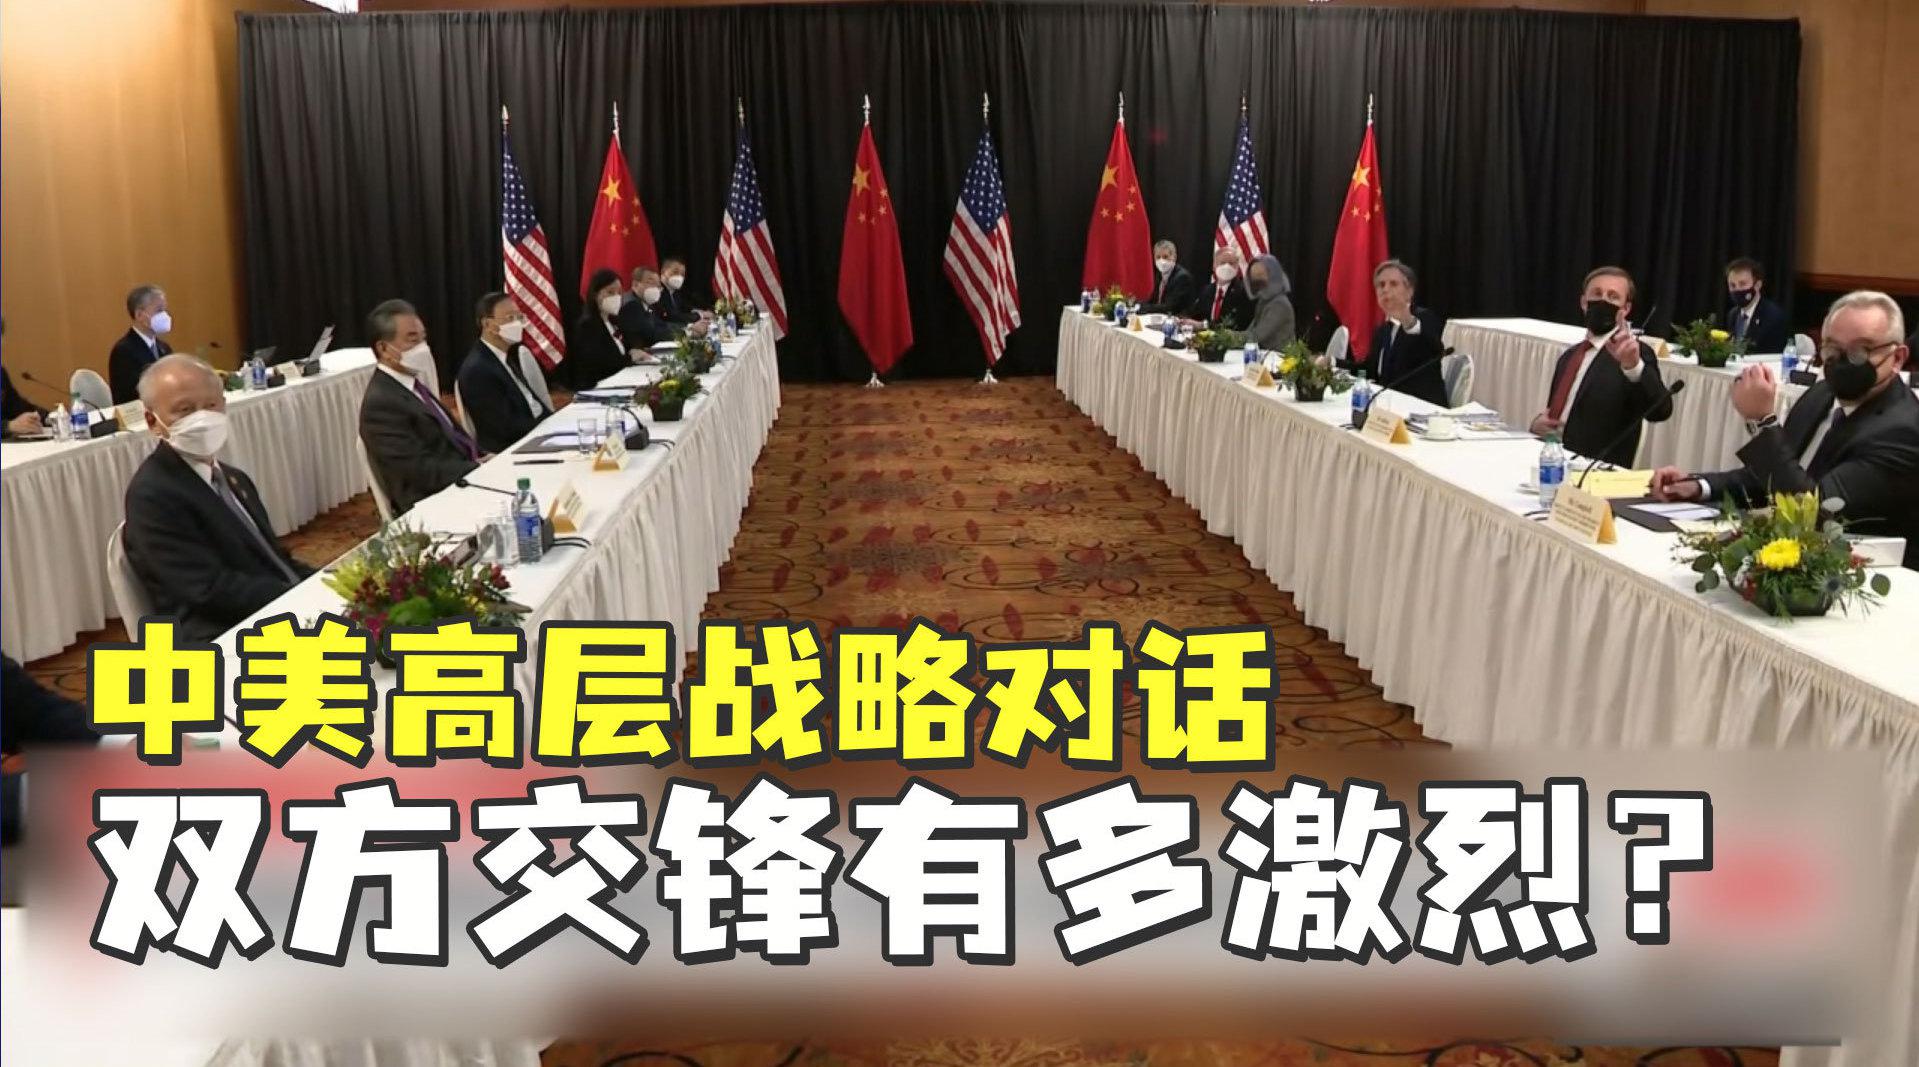 【中美貿戰】FT:中美已接近達成終極協議 | Now 新聞